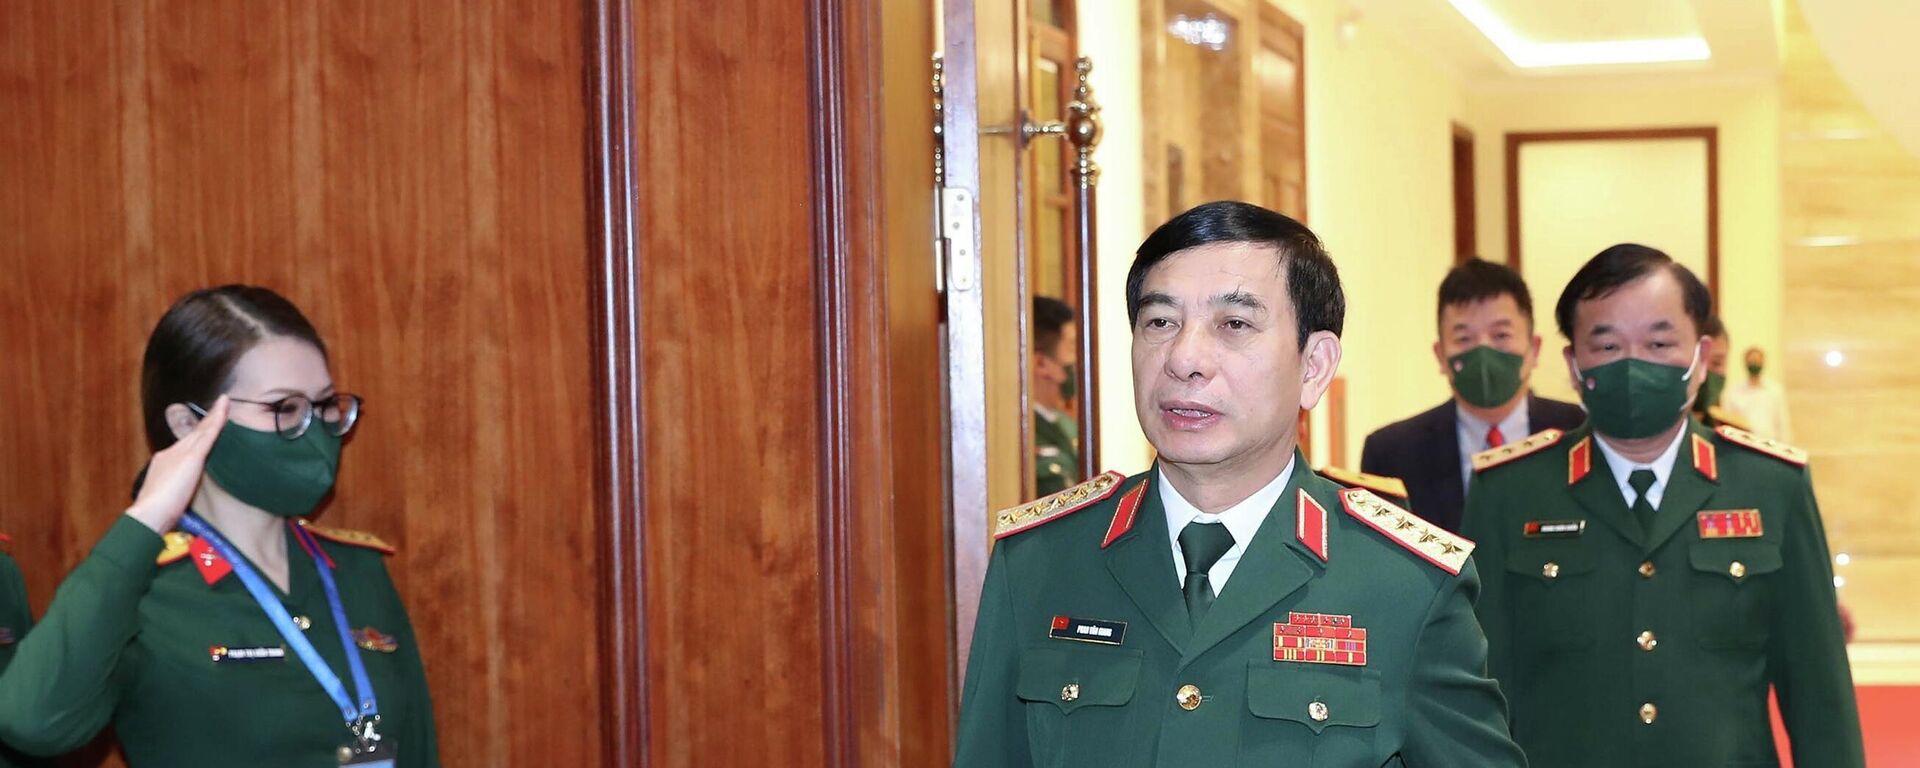 Đại tướng Phan Văn Giang, Bộ trưởng Bộ Quốc phòng Việt Nam đến dự hội nghị - Sputnik Việt Nam, 1920, 06.12.2021